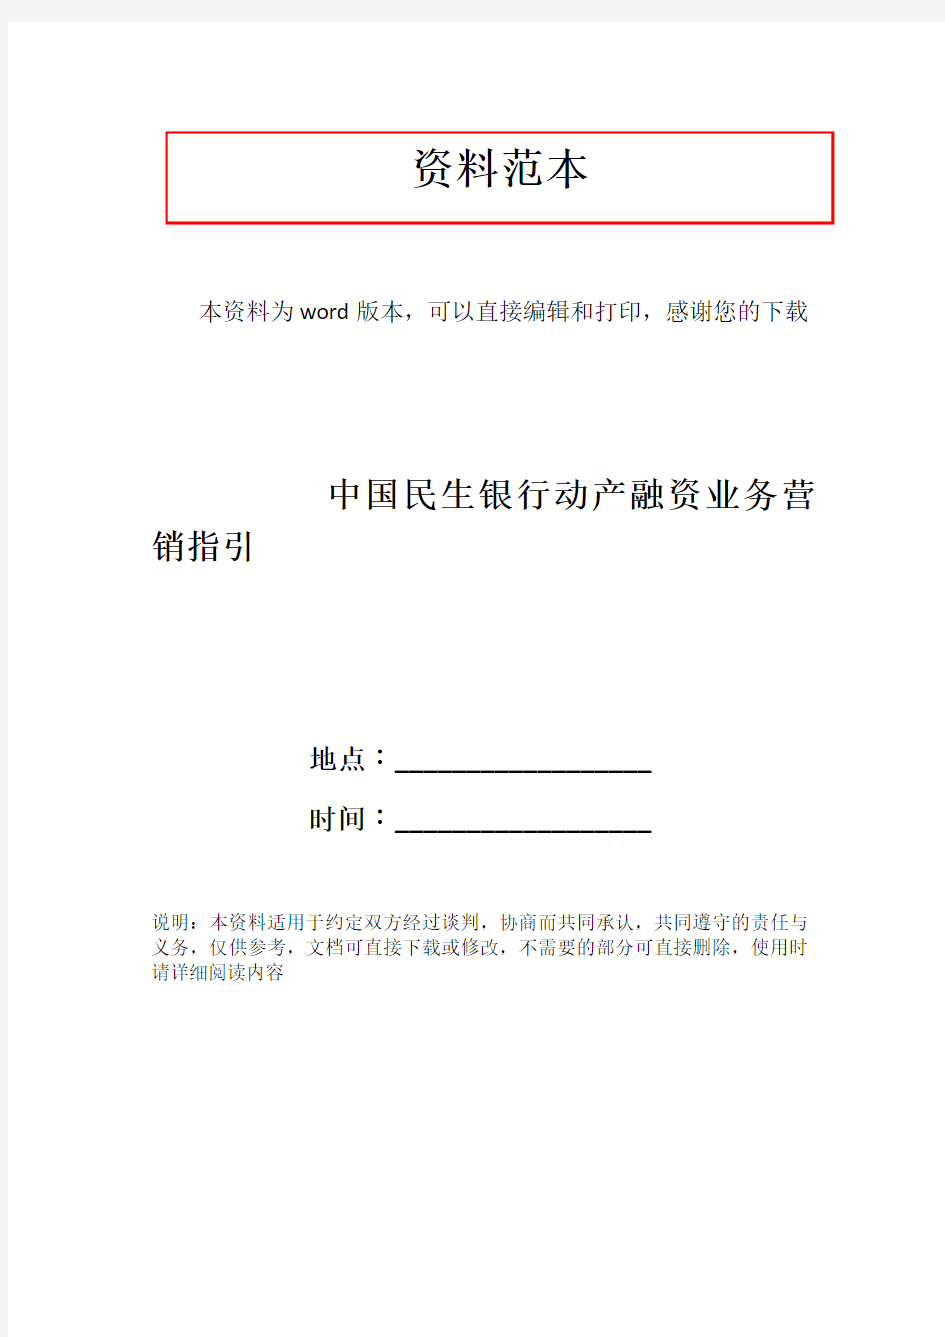 中国民生银行动产融资业务营销指引